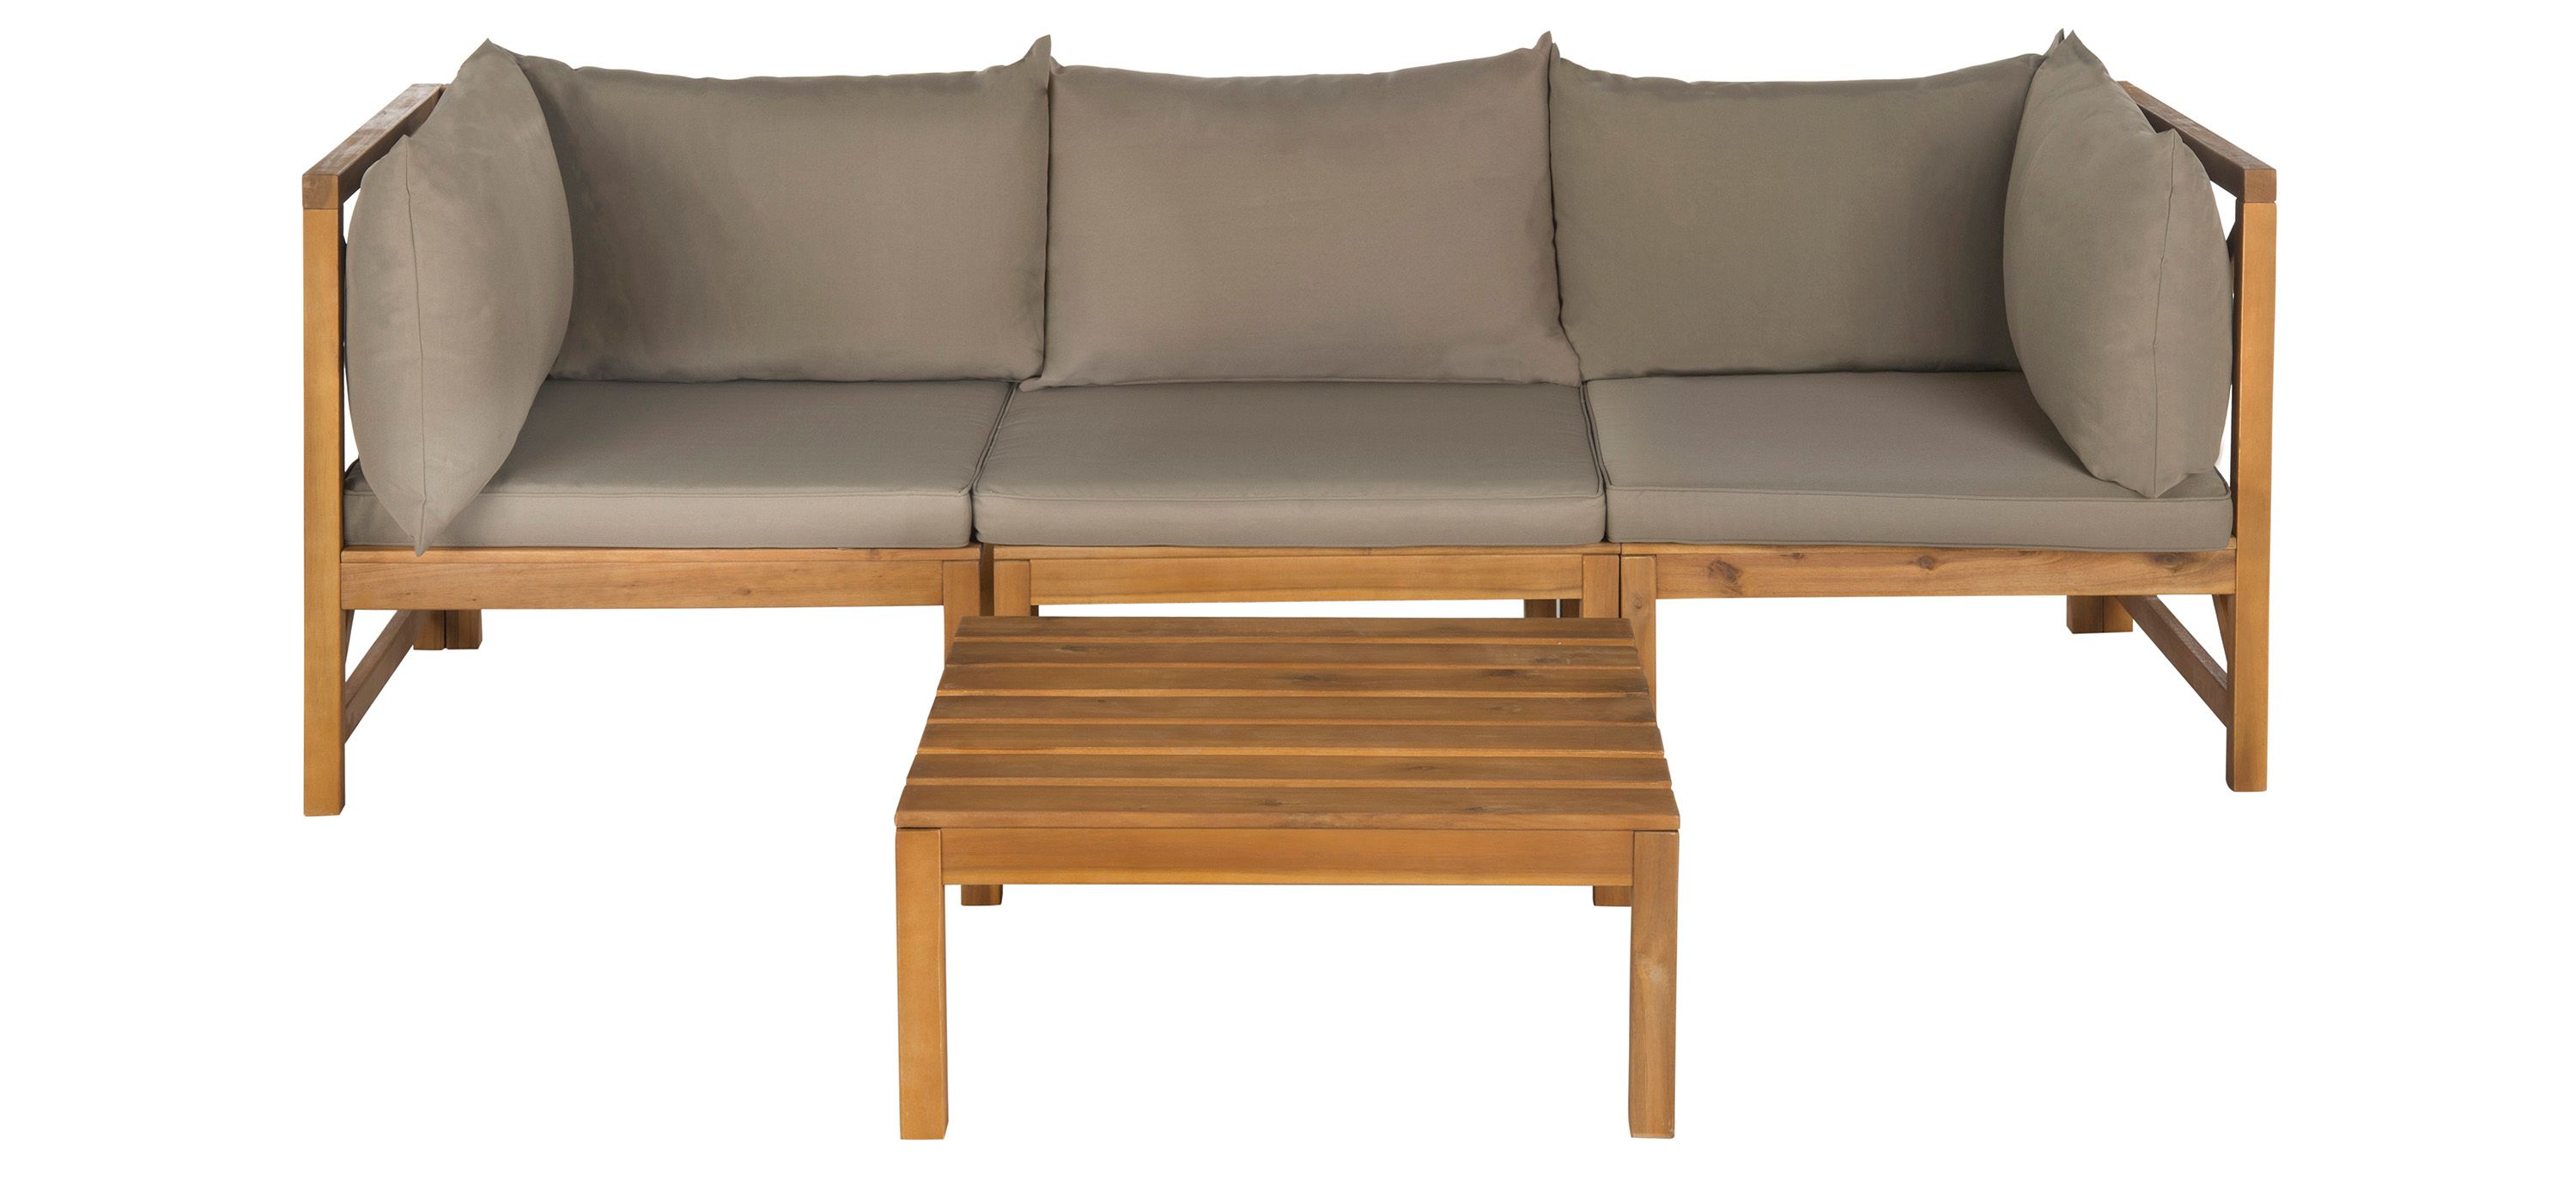 Kyoga Modular Outdoor Sectional Sofa